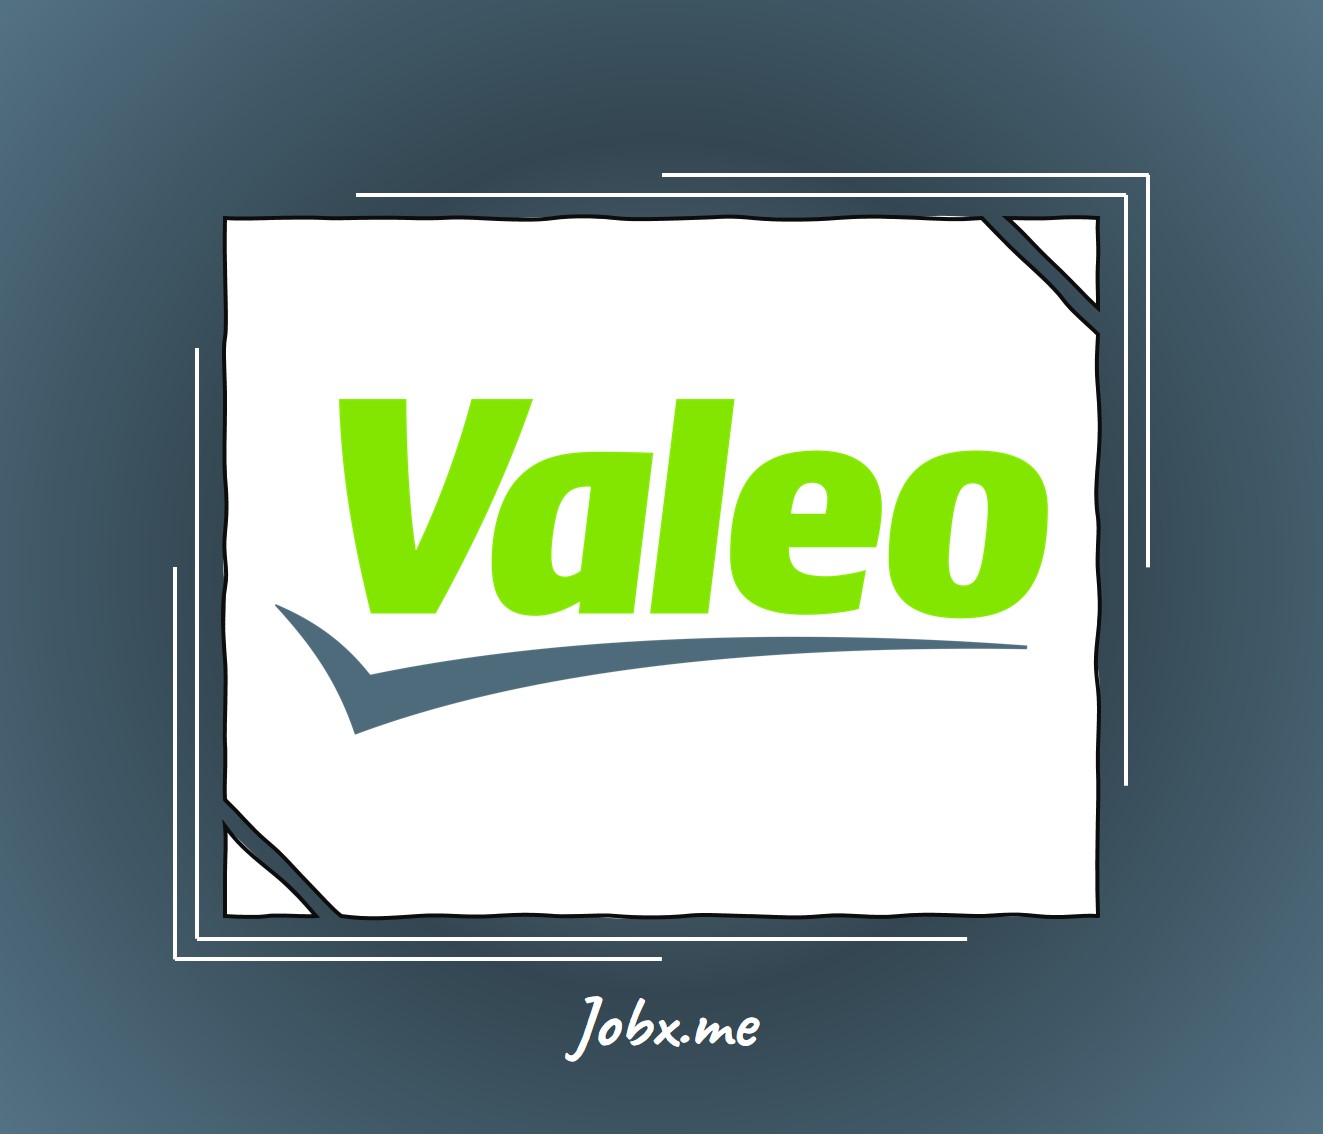 Valeo Careers